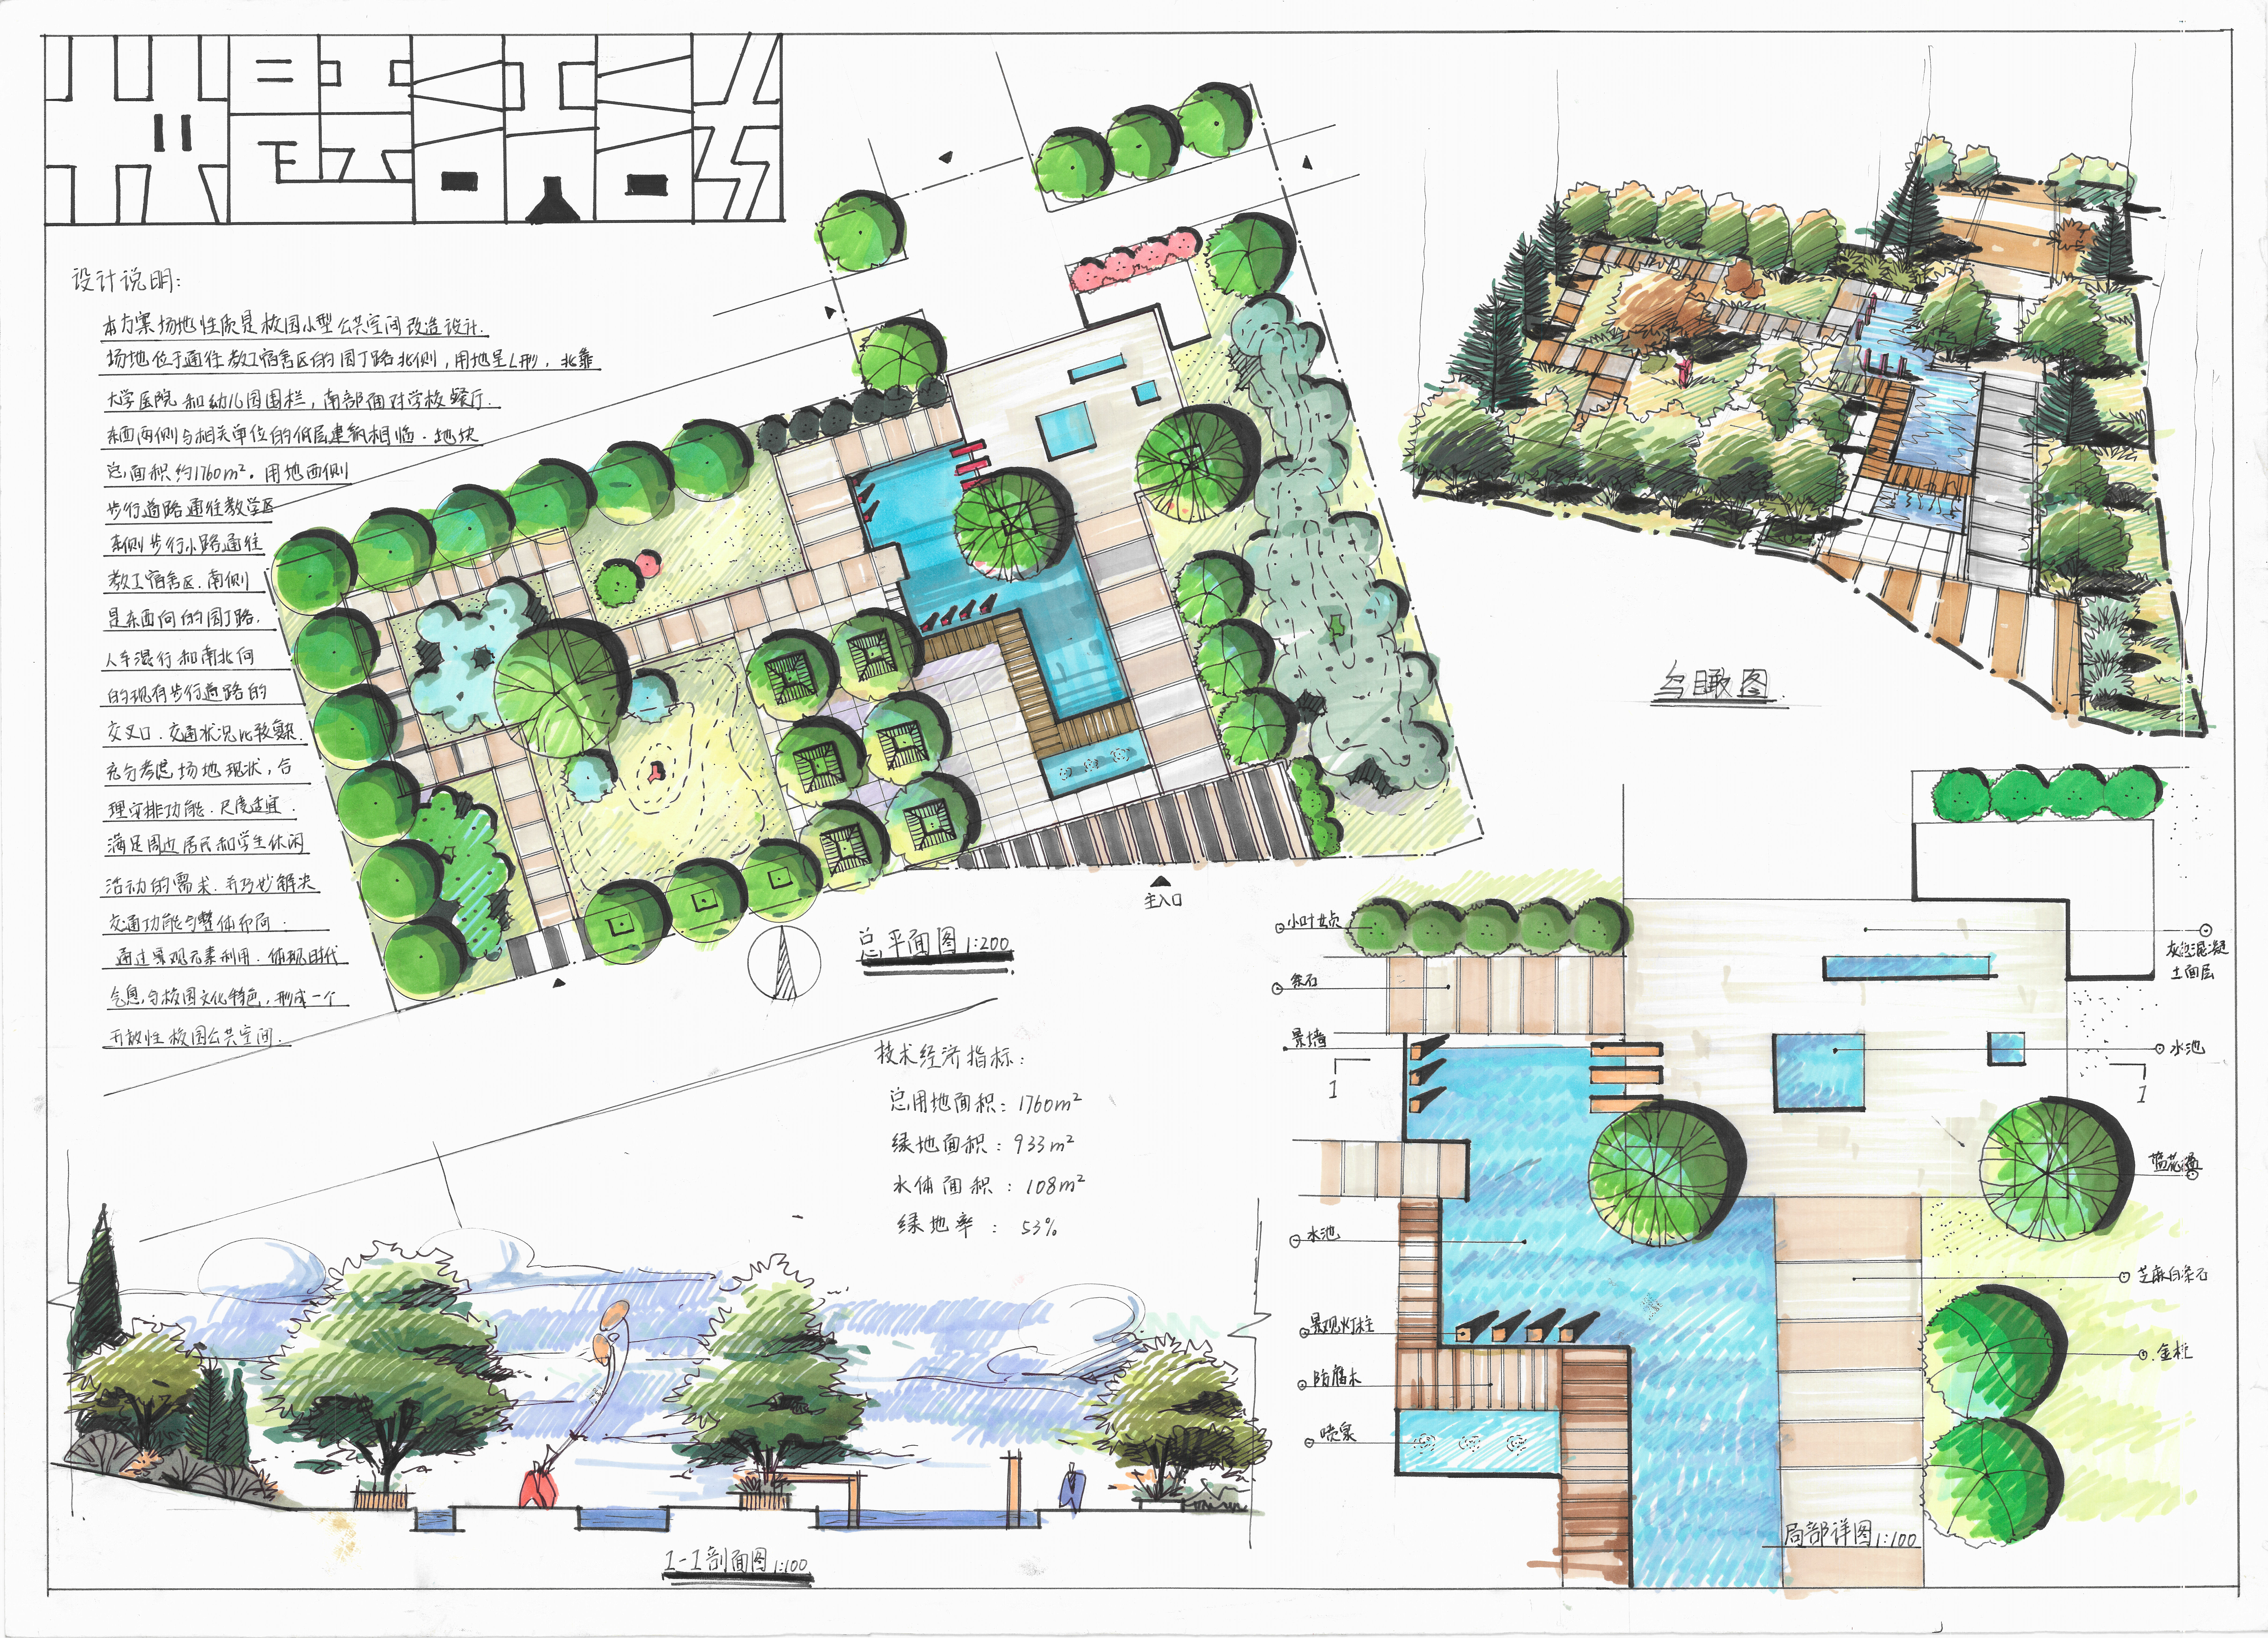 1,一快题设计流程 华工的快题一般分为两大体块,建筑设计和园林场地的